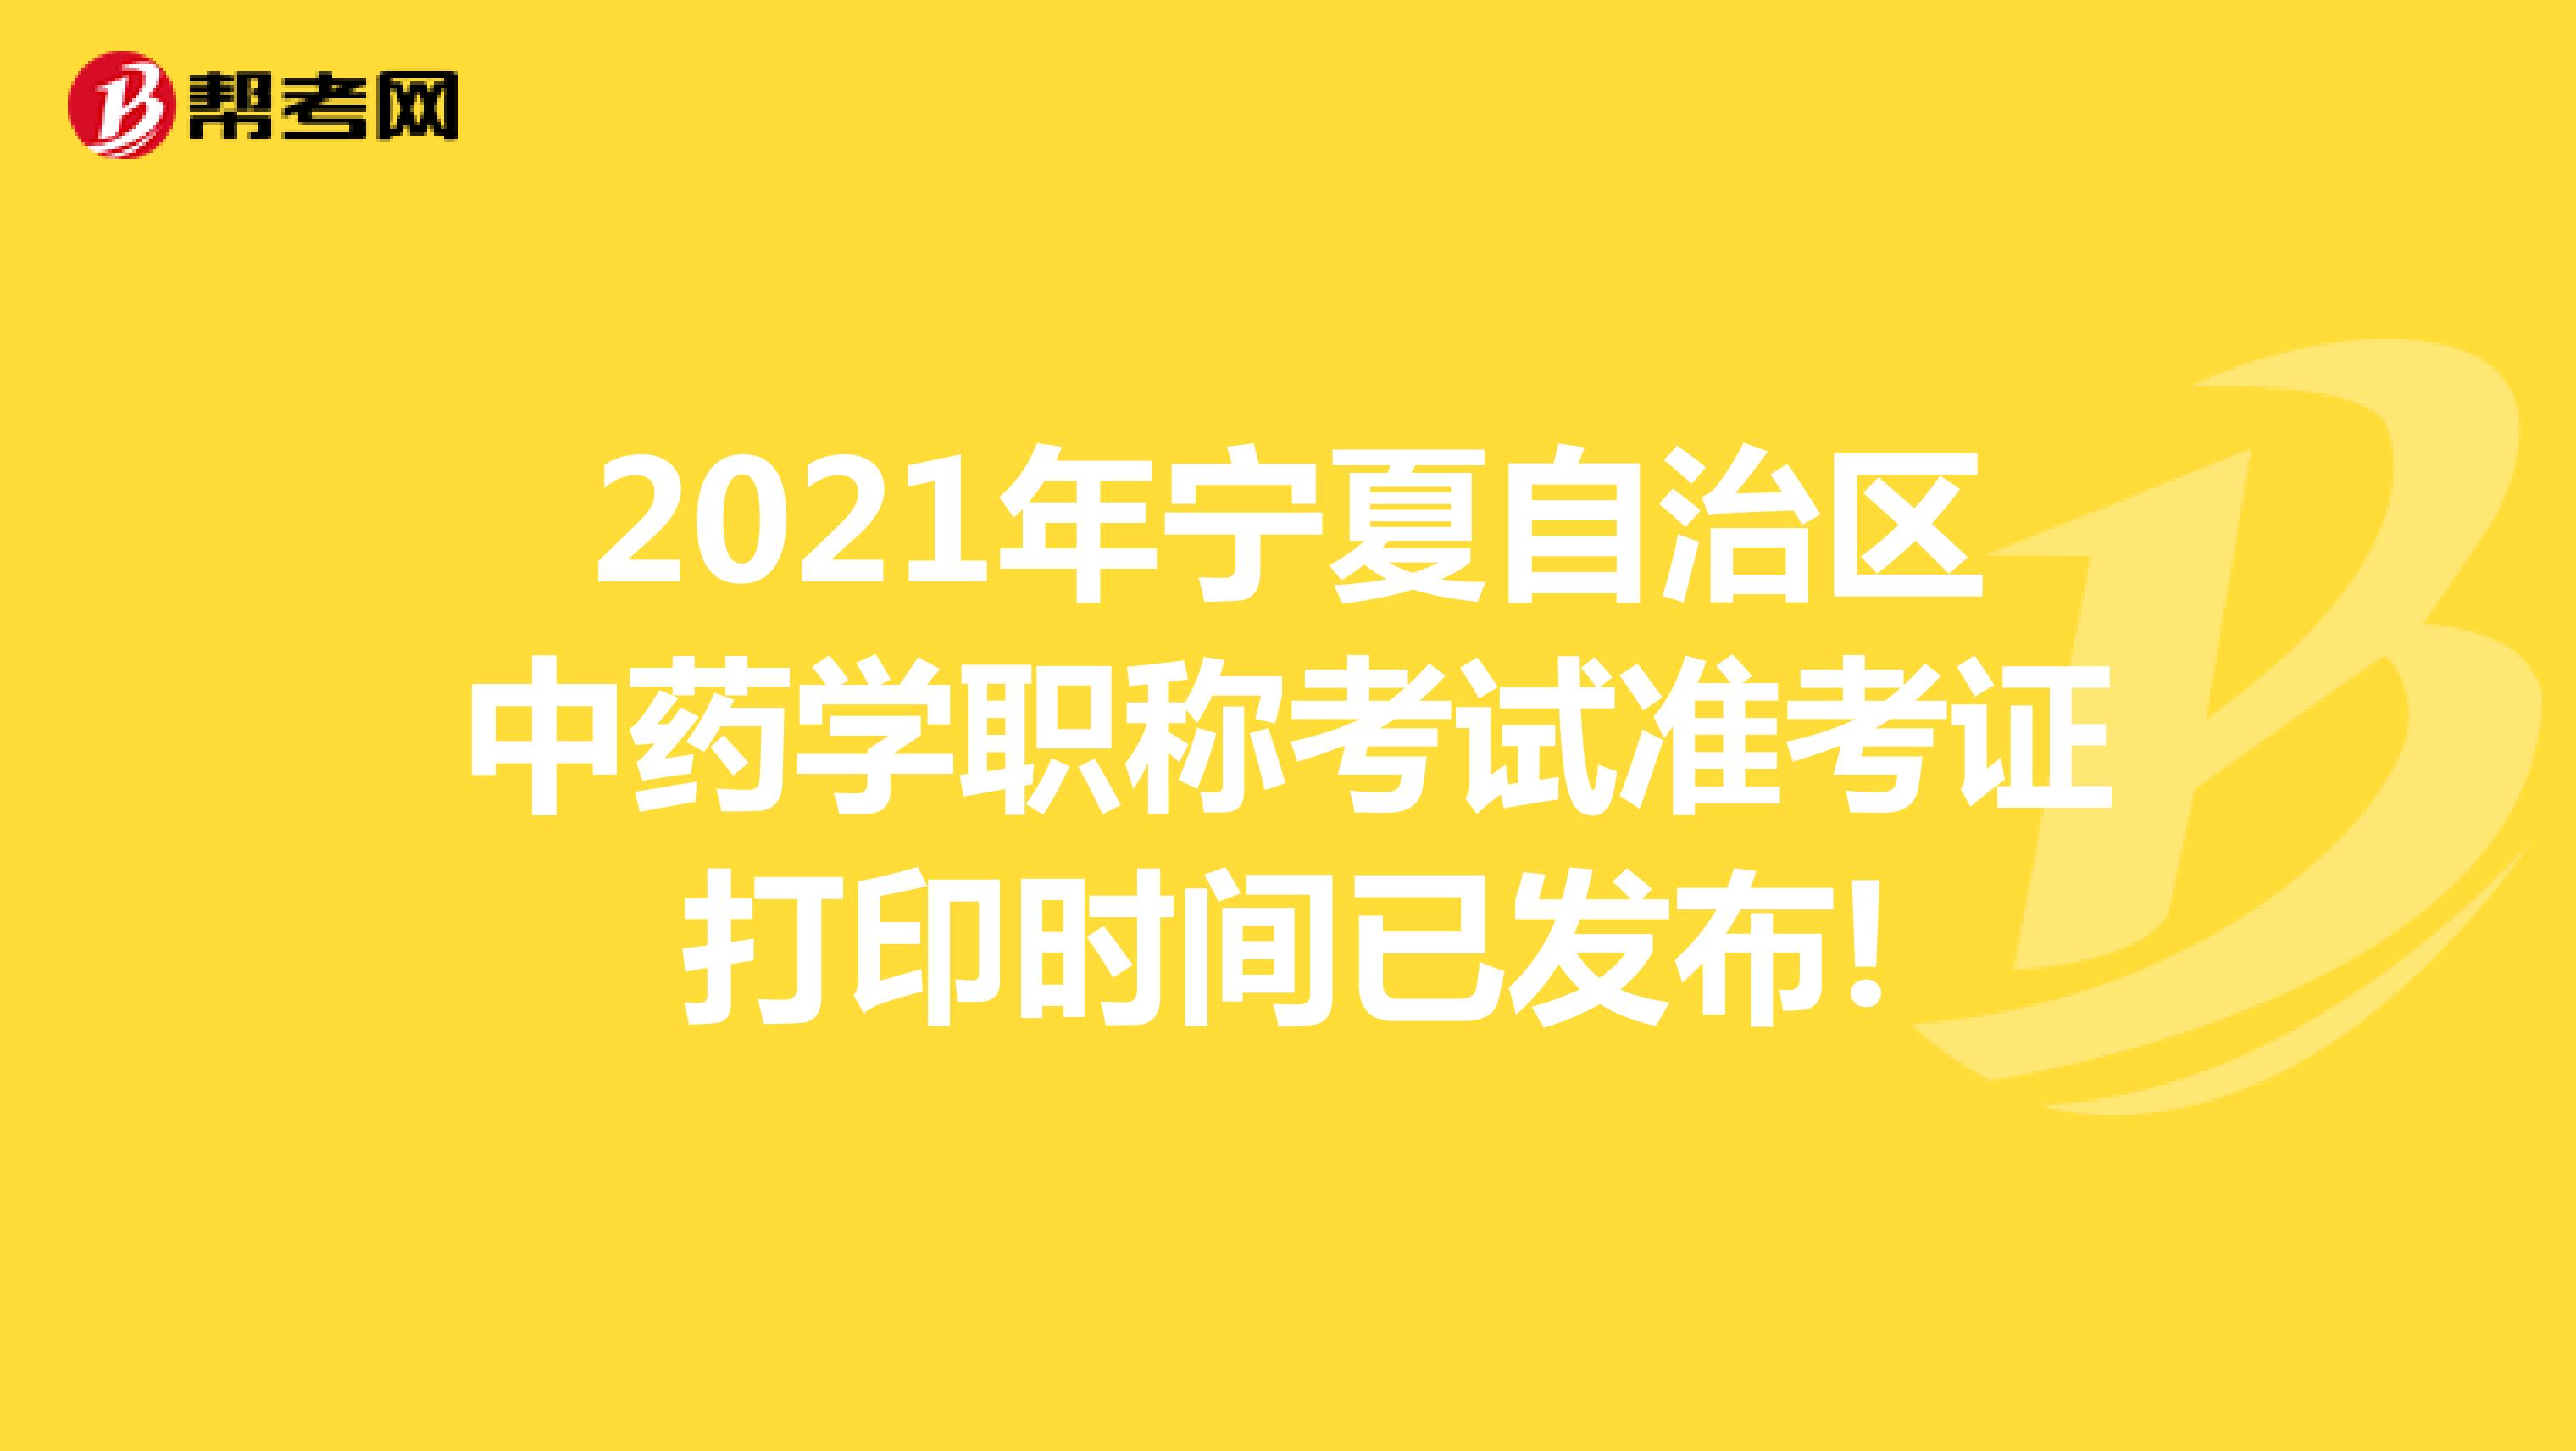 2021年宁夏自治区中药学职称考试准考证打印时间已发布!